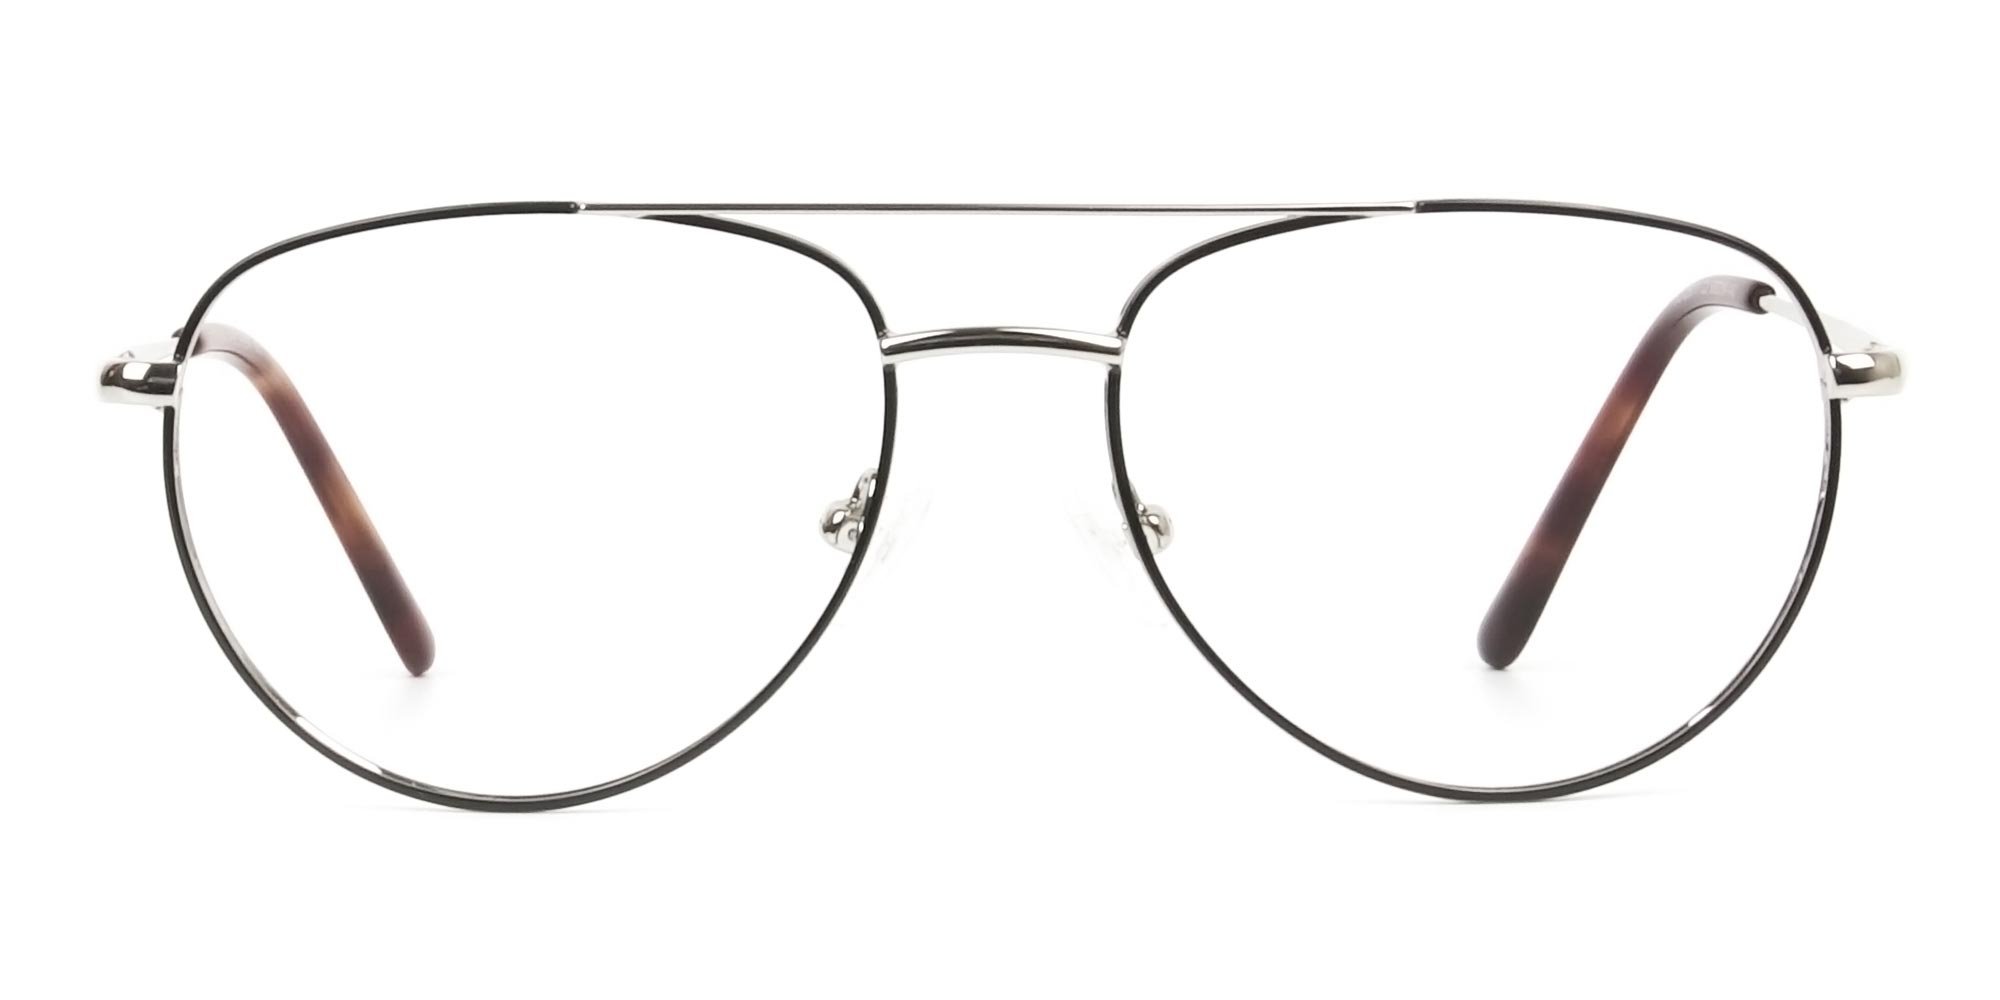 Black & Silver Aviator Glasses in Metal - 1